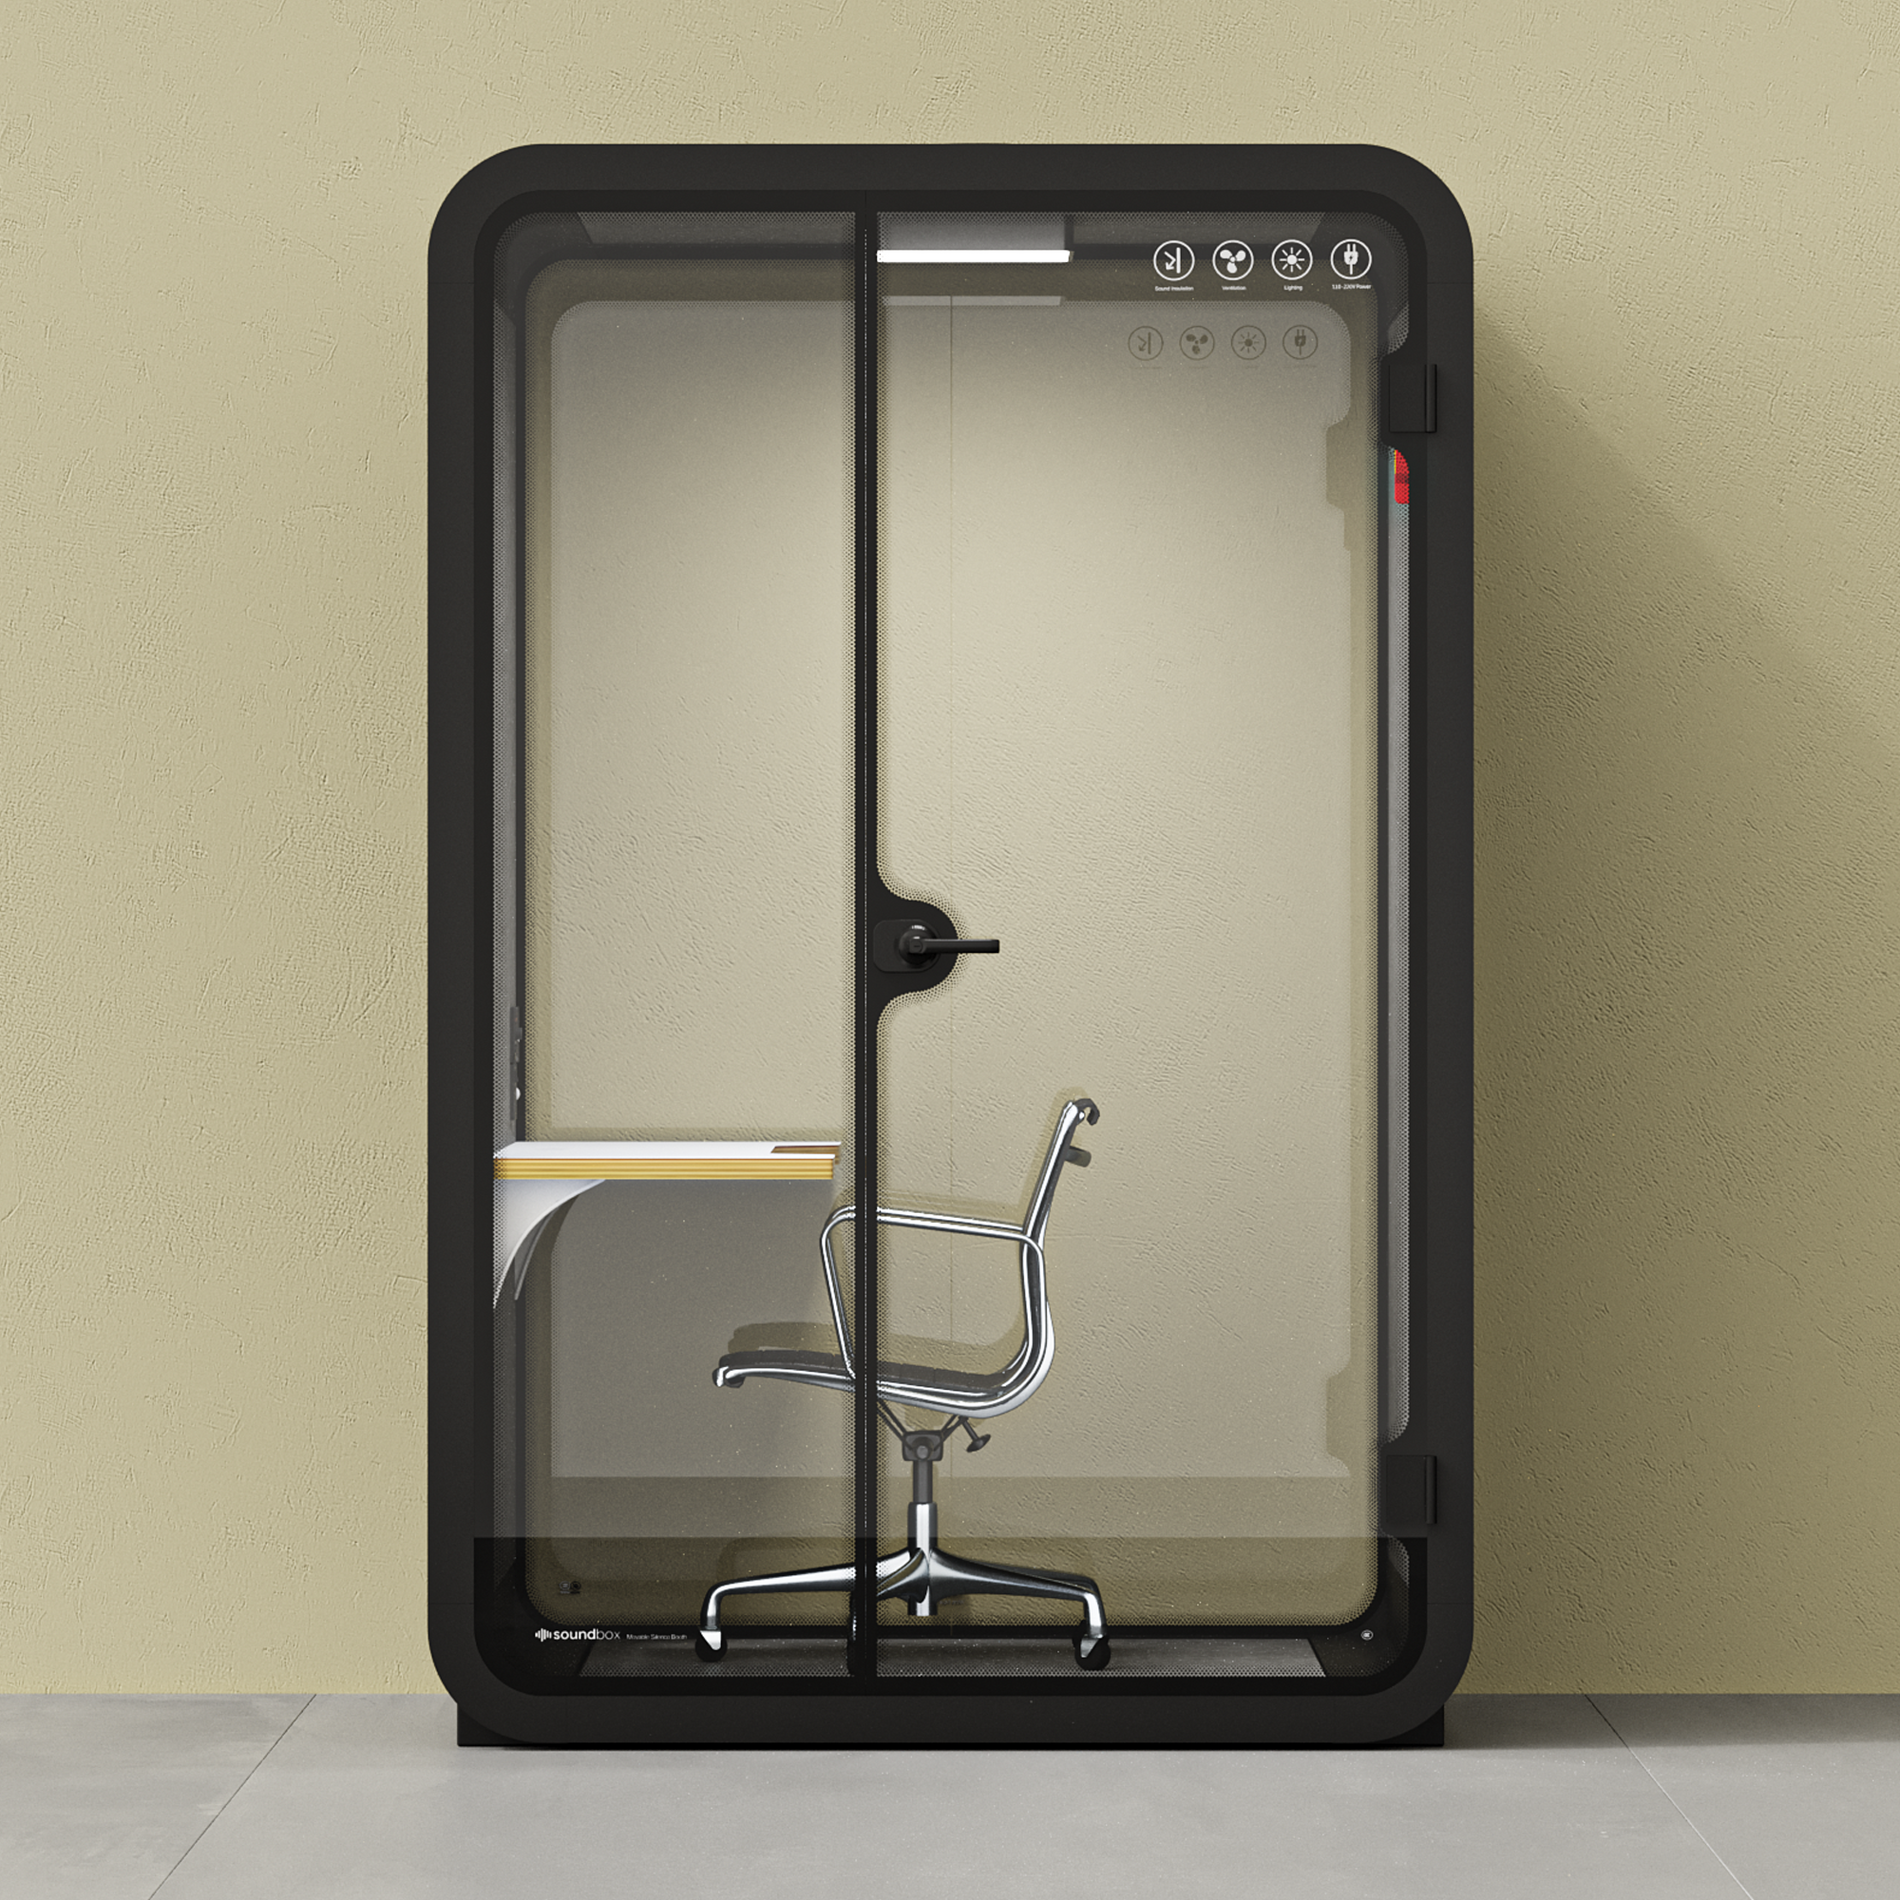 Quell Cabina telefonica da ufficio per due personeCharcoal / Dark Gray / Work Station + Designer Office Chair